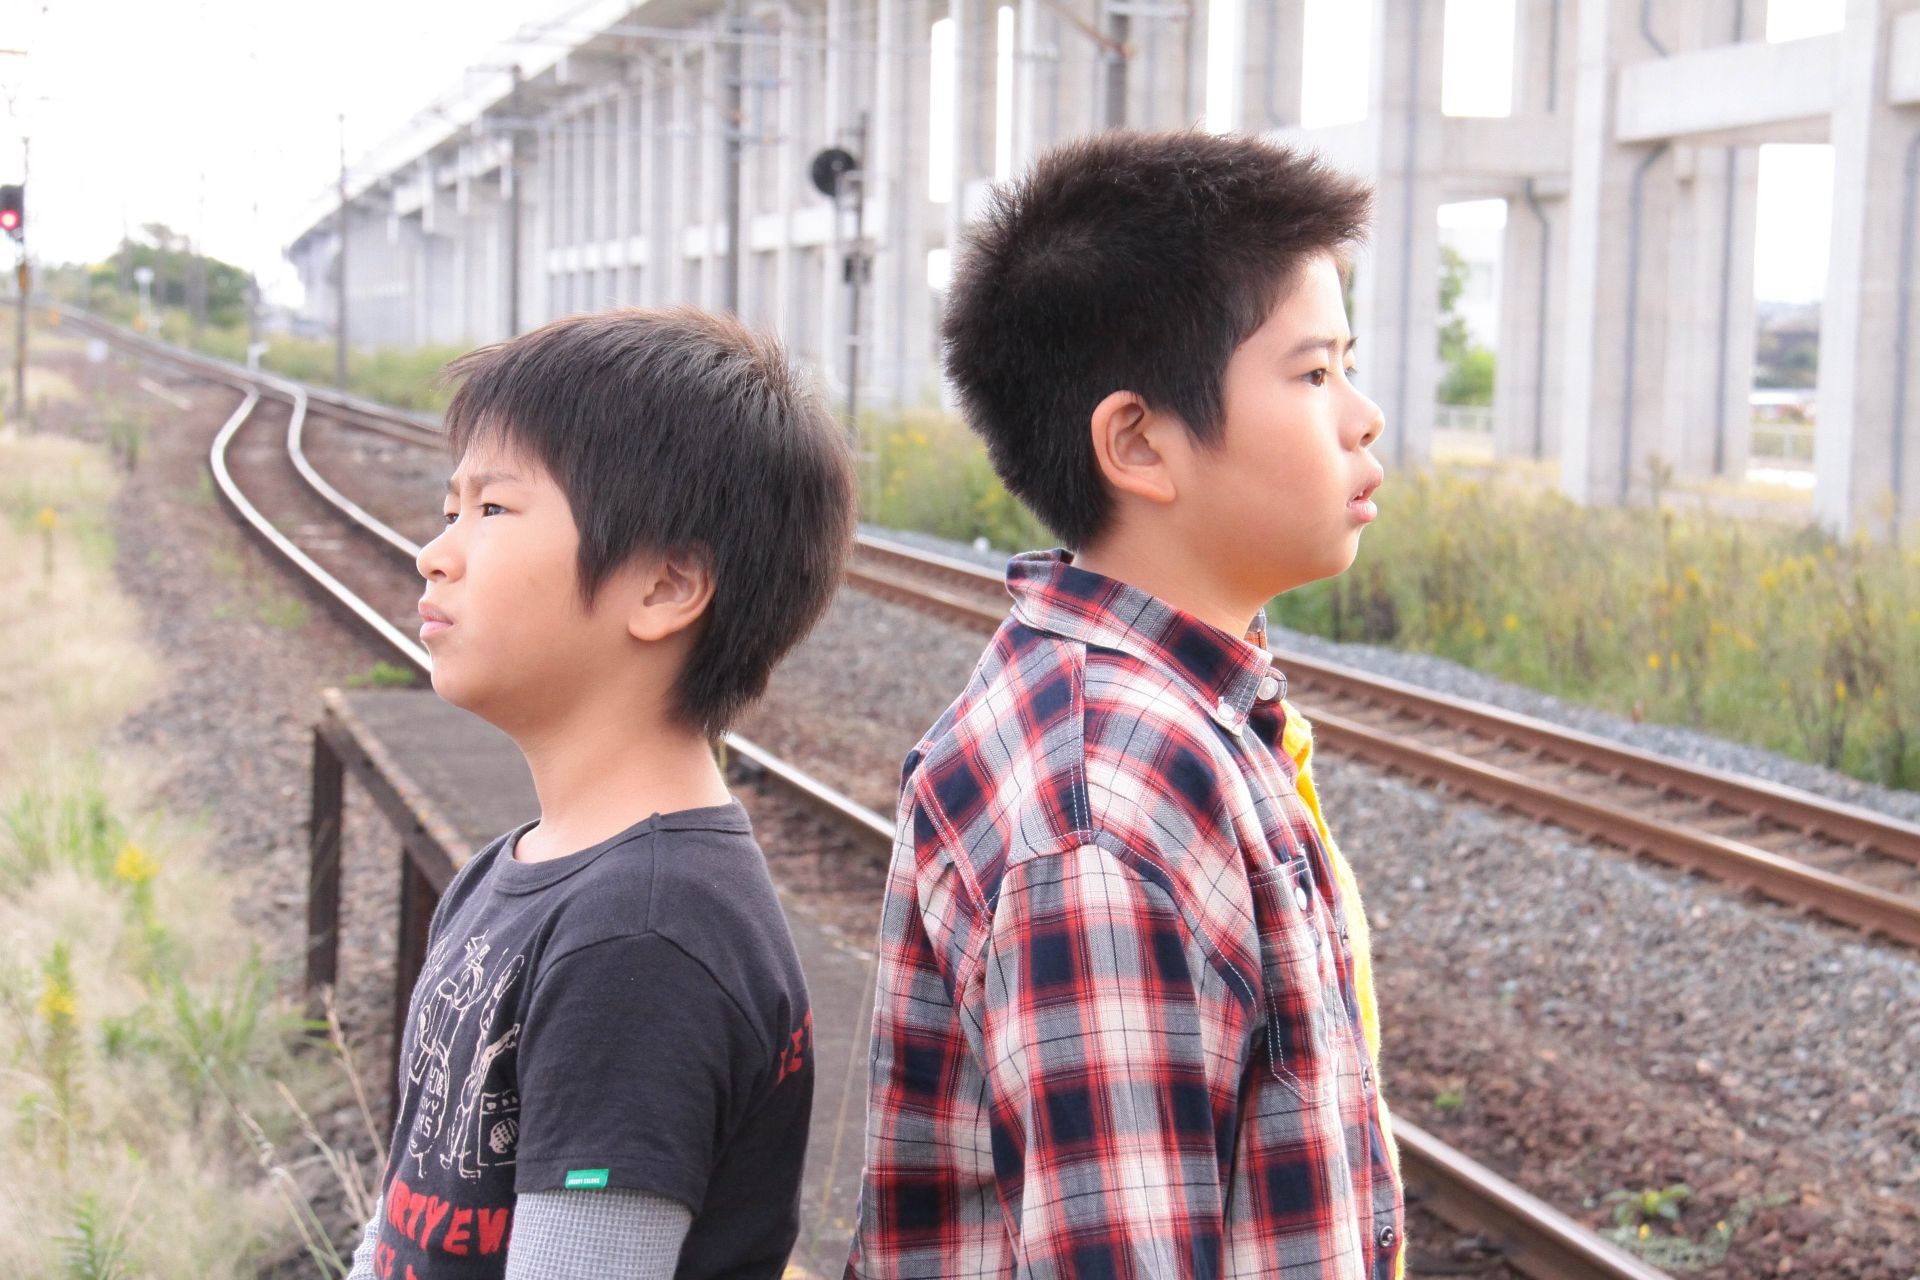 Koki Maeda and Ohshiro Maeda in Magnolia Pictures' I Wish (2012)